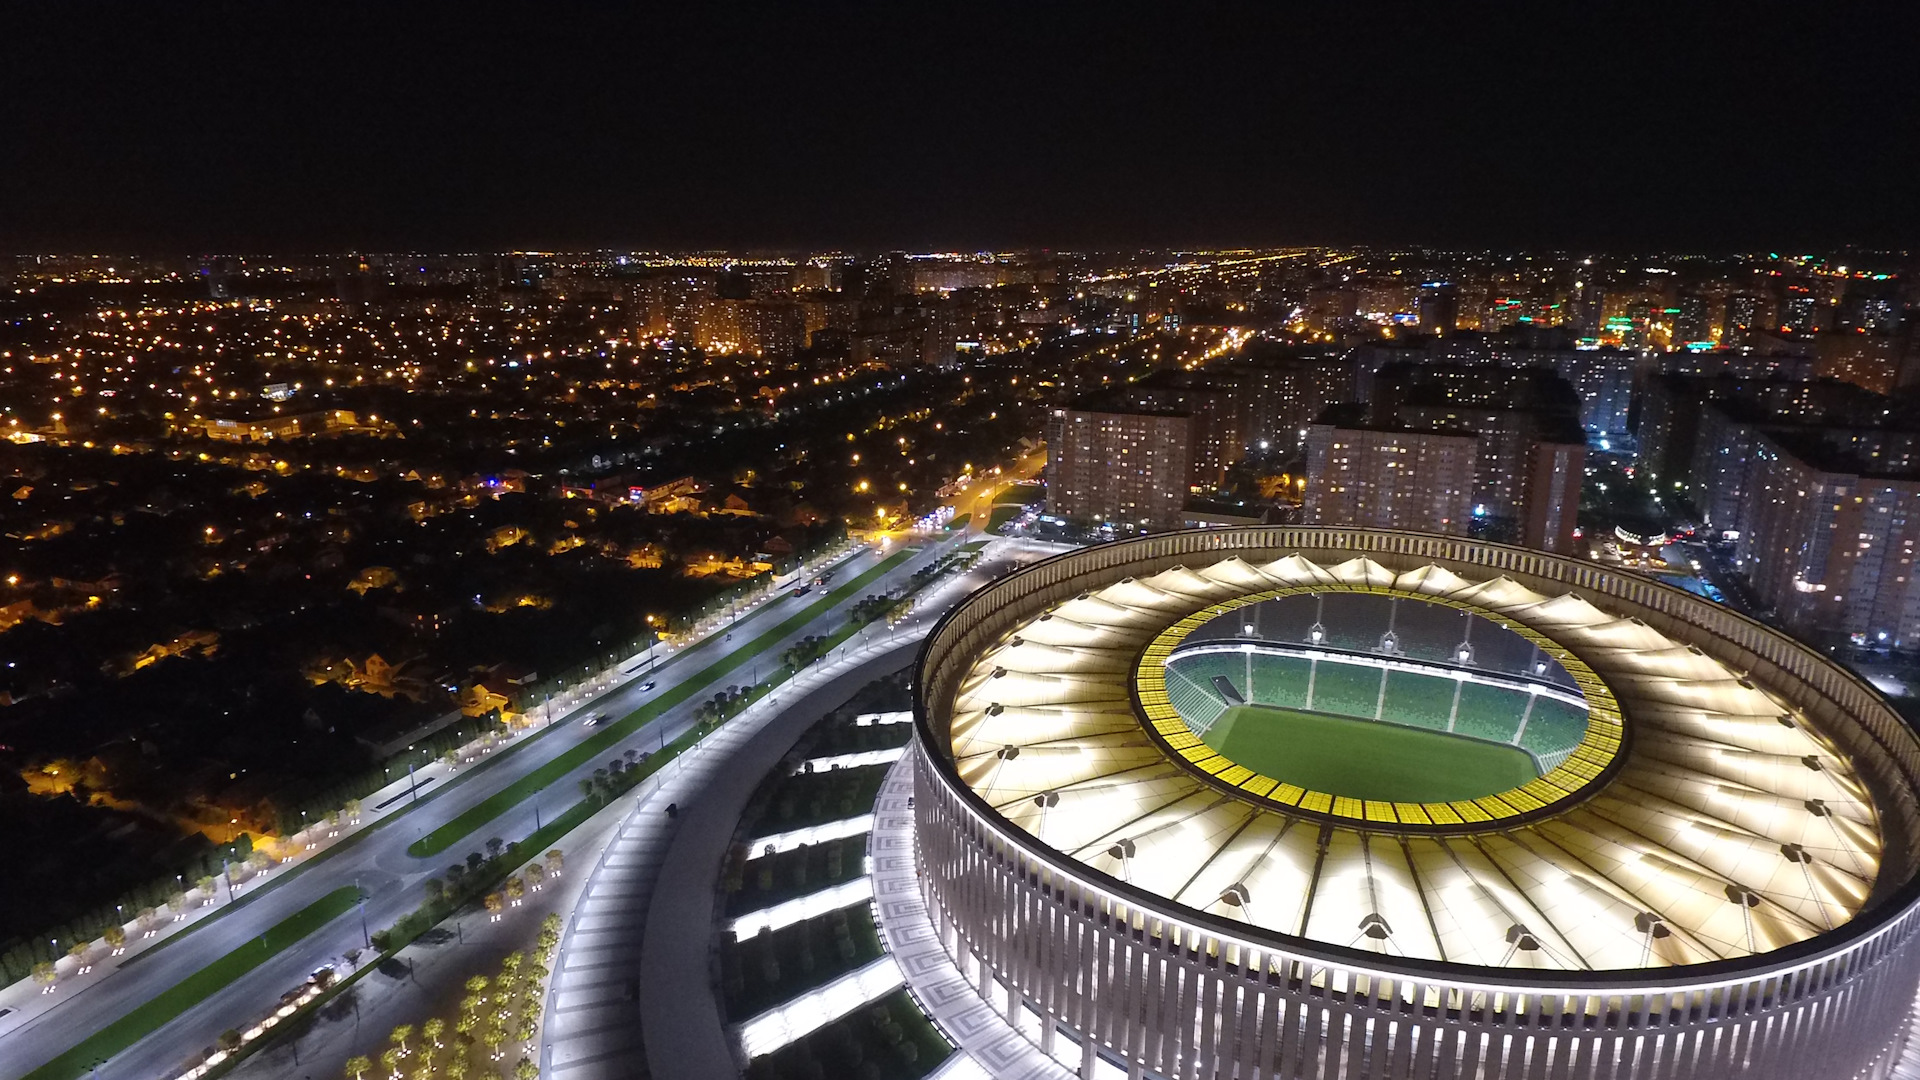 Стадион ночью. Стадион Краснодар Арена. Стадион Галицкого в Краснодаре. Стадион Краснодар Арена парк. Стадион Краснодар с высоты птичьего полета.